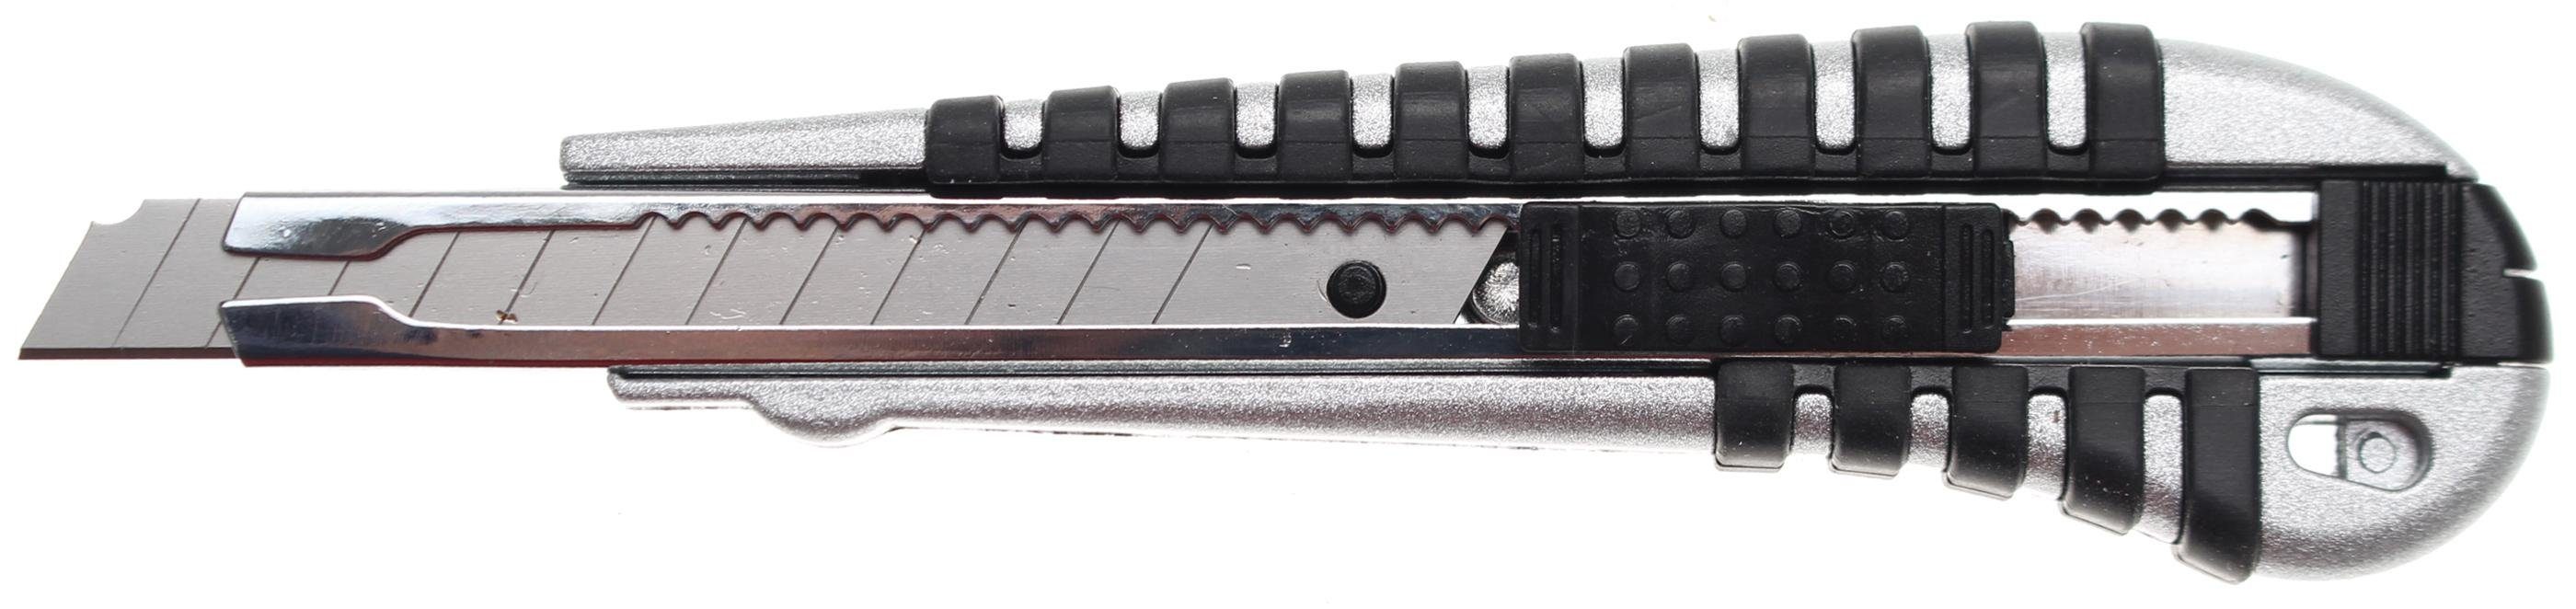 BGS technic Cuttermesser Abbrechmesser, Klingenbreite 9 mm